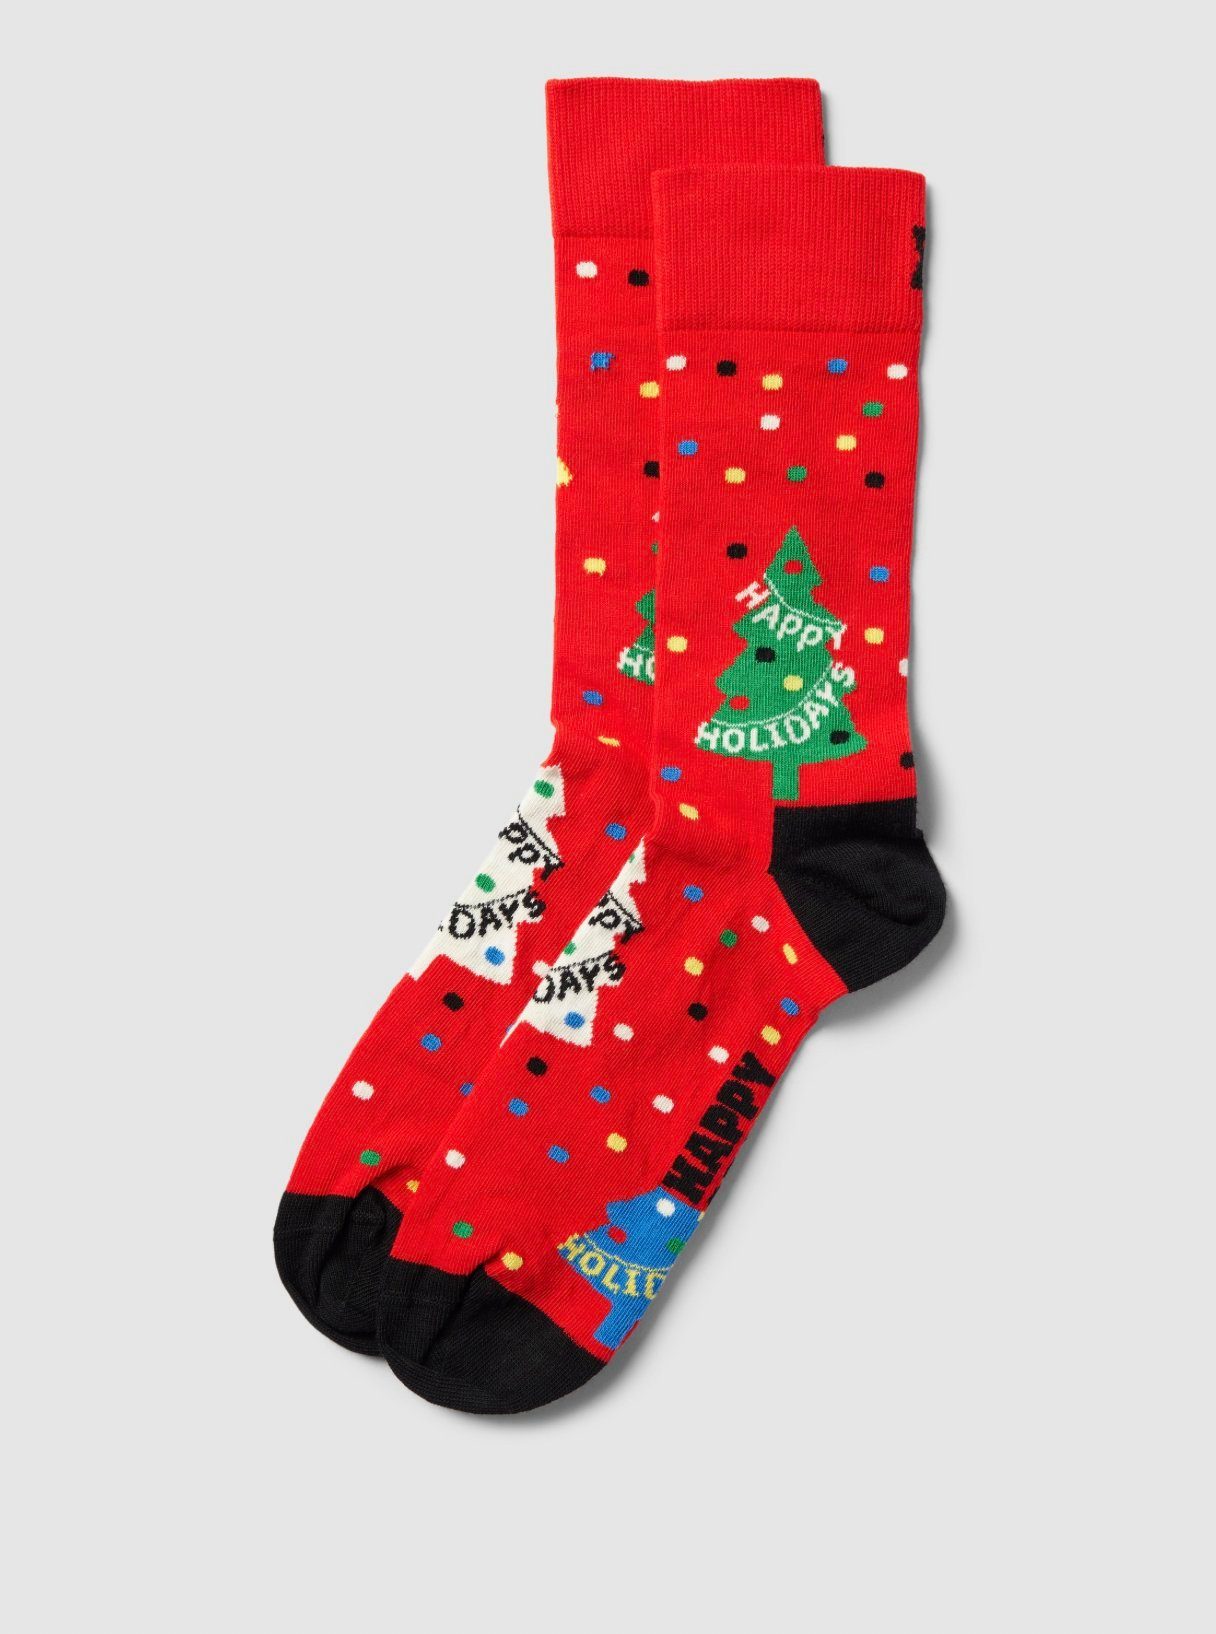 Freizeitsocken Socks Happy Sock Holidays Happy